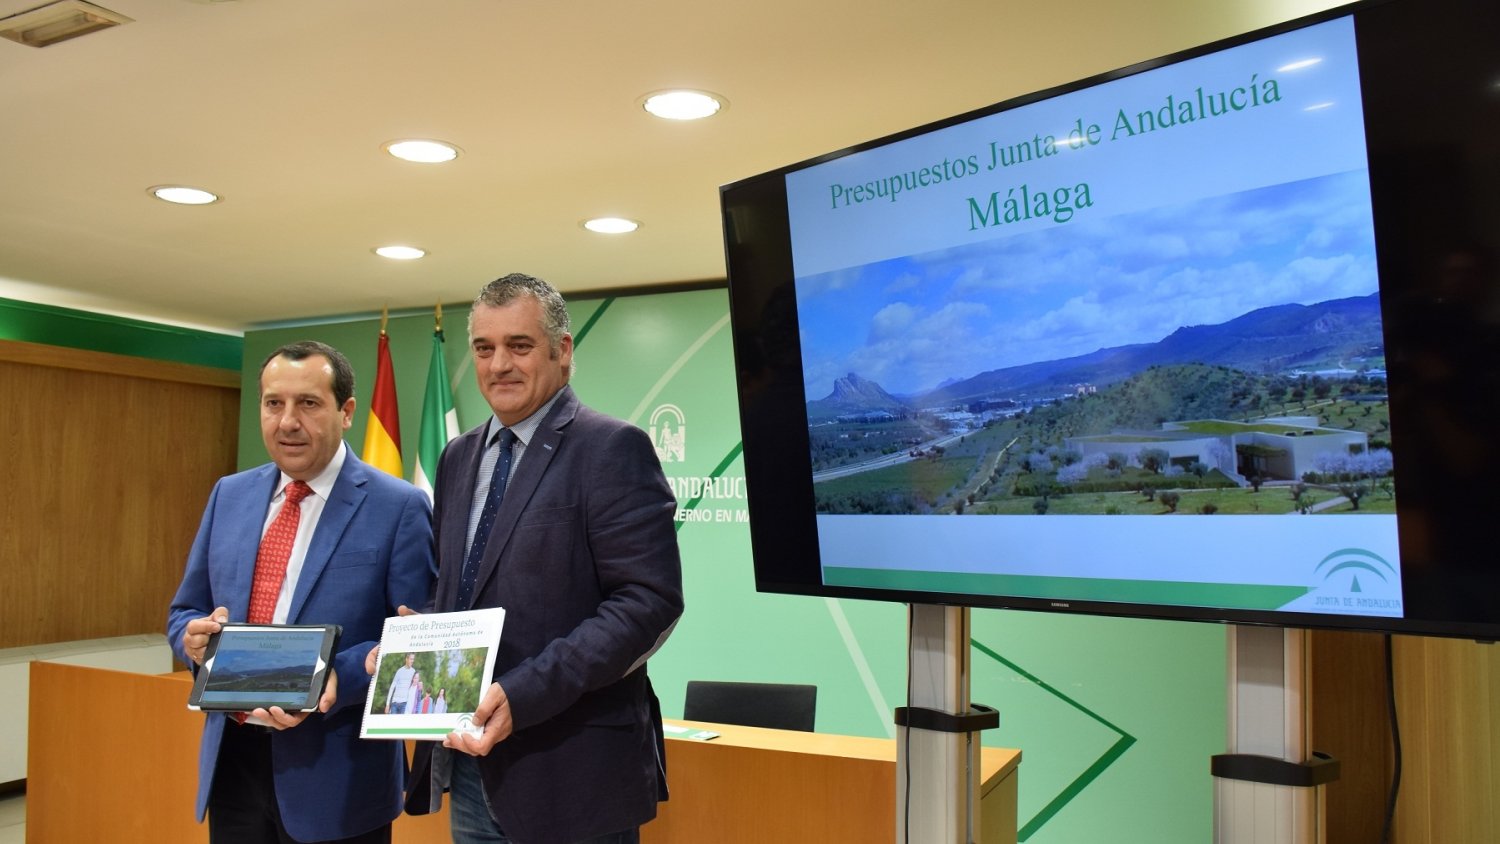 La Junta de Andalucía presenta en Málaga unos presupuestos sociales y de mejora de los servicios públicos